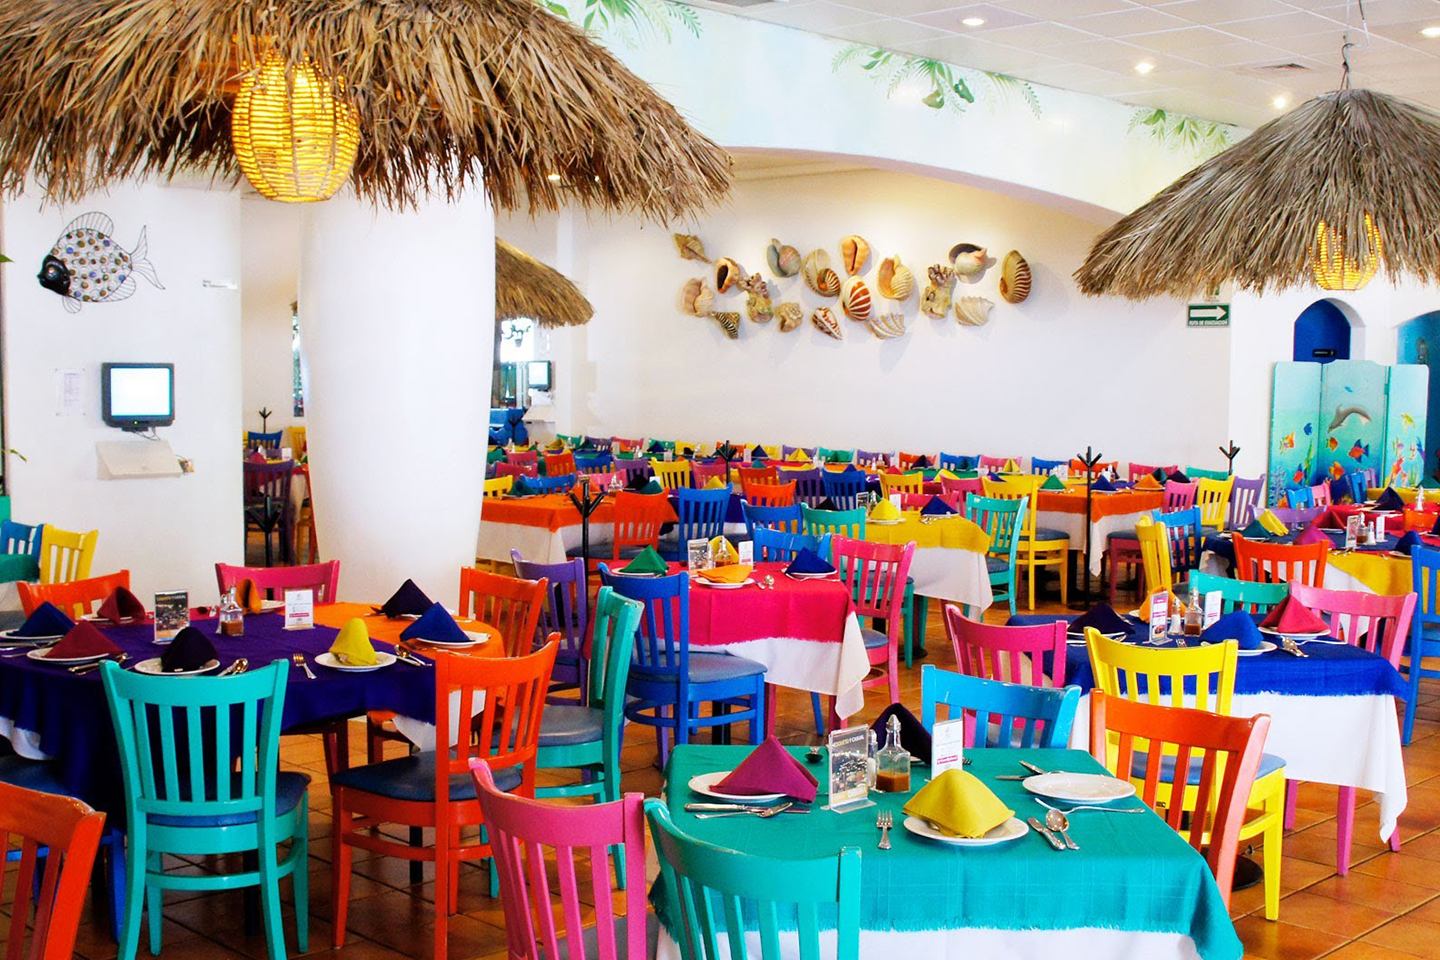 Los 10 Mejores Restaurantes de Mariscos en Guadalajara - Tips Para Tu Viaje